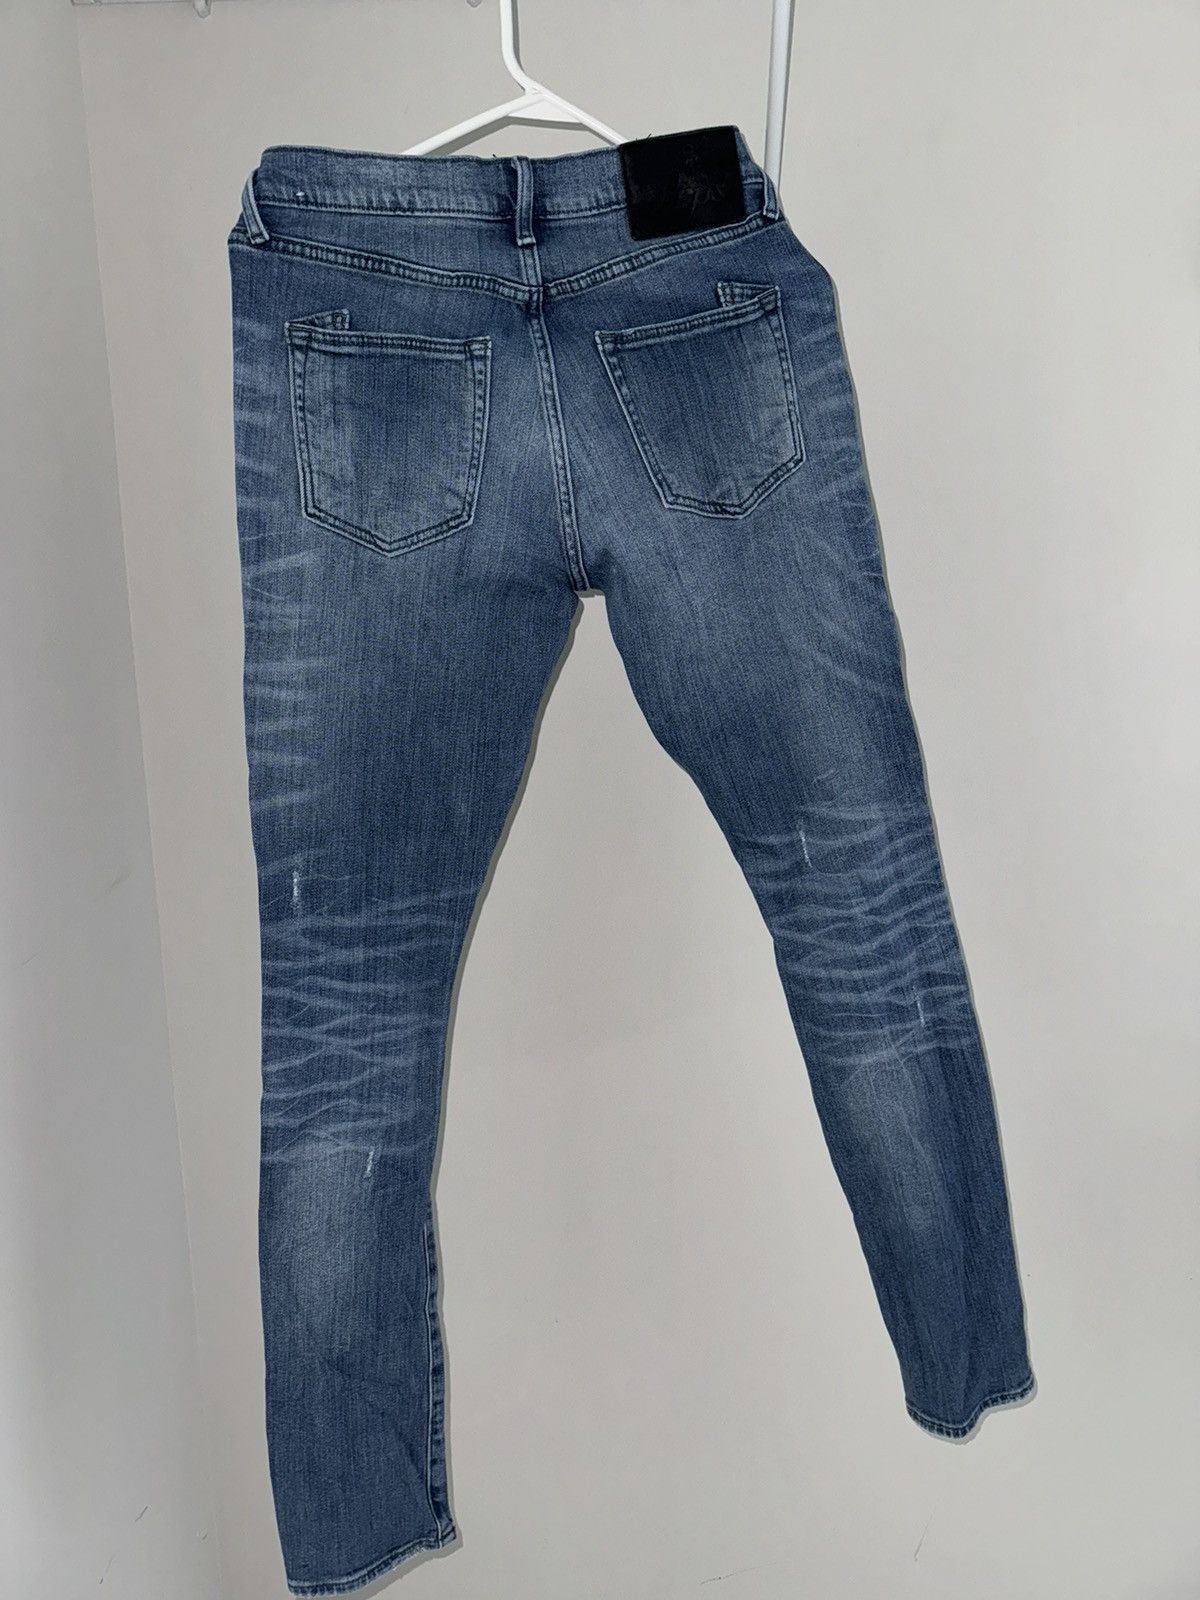 Prps Prps jeans Size US 28 / EU 44 - 2 Preview